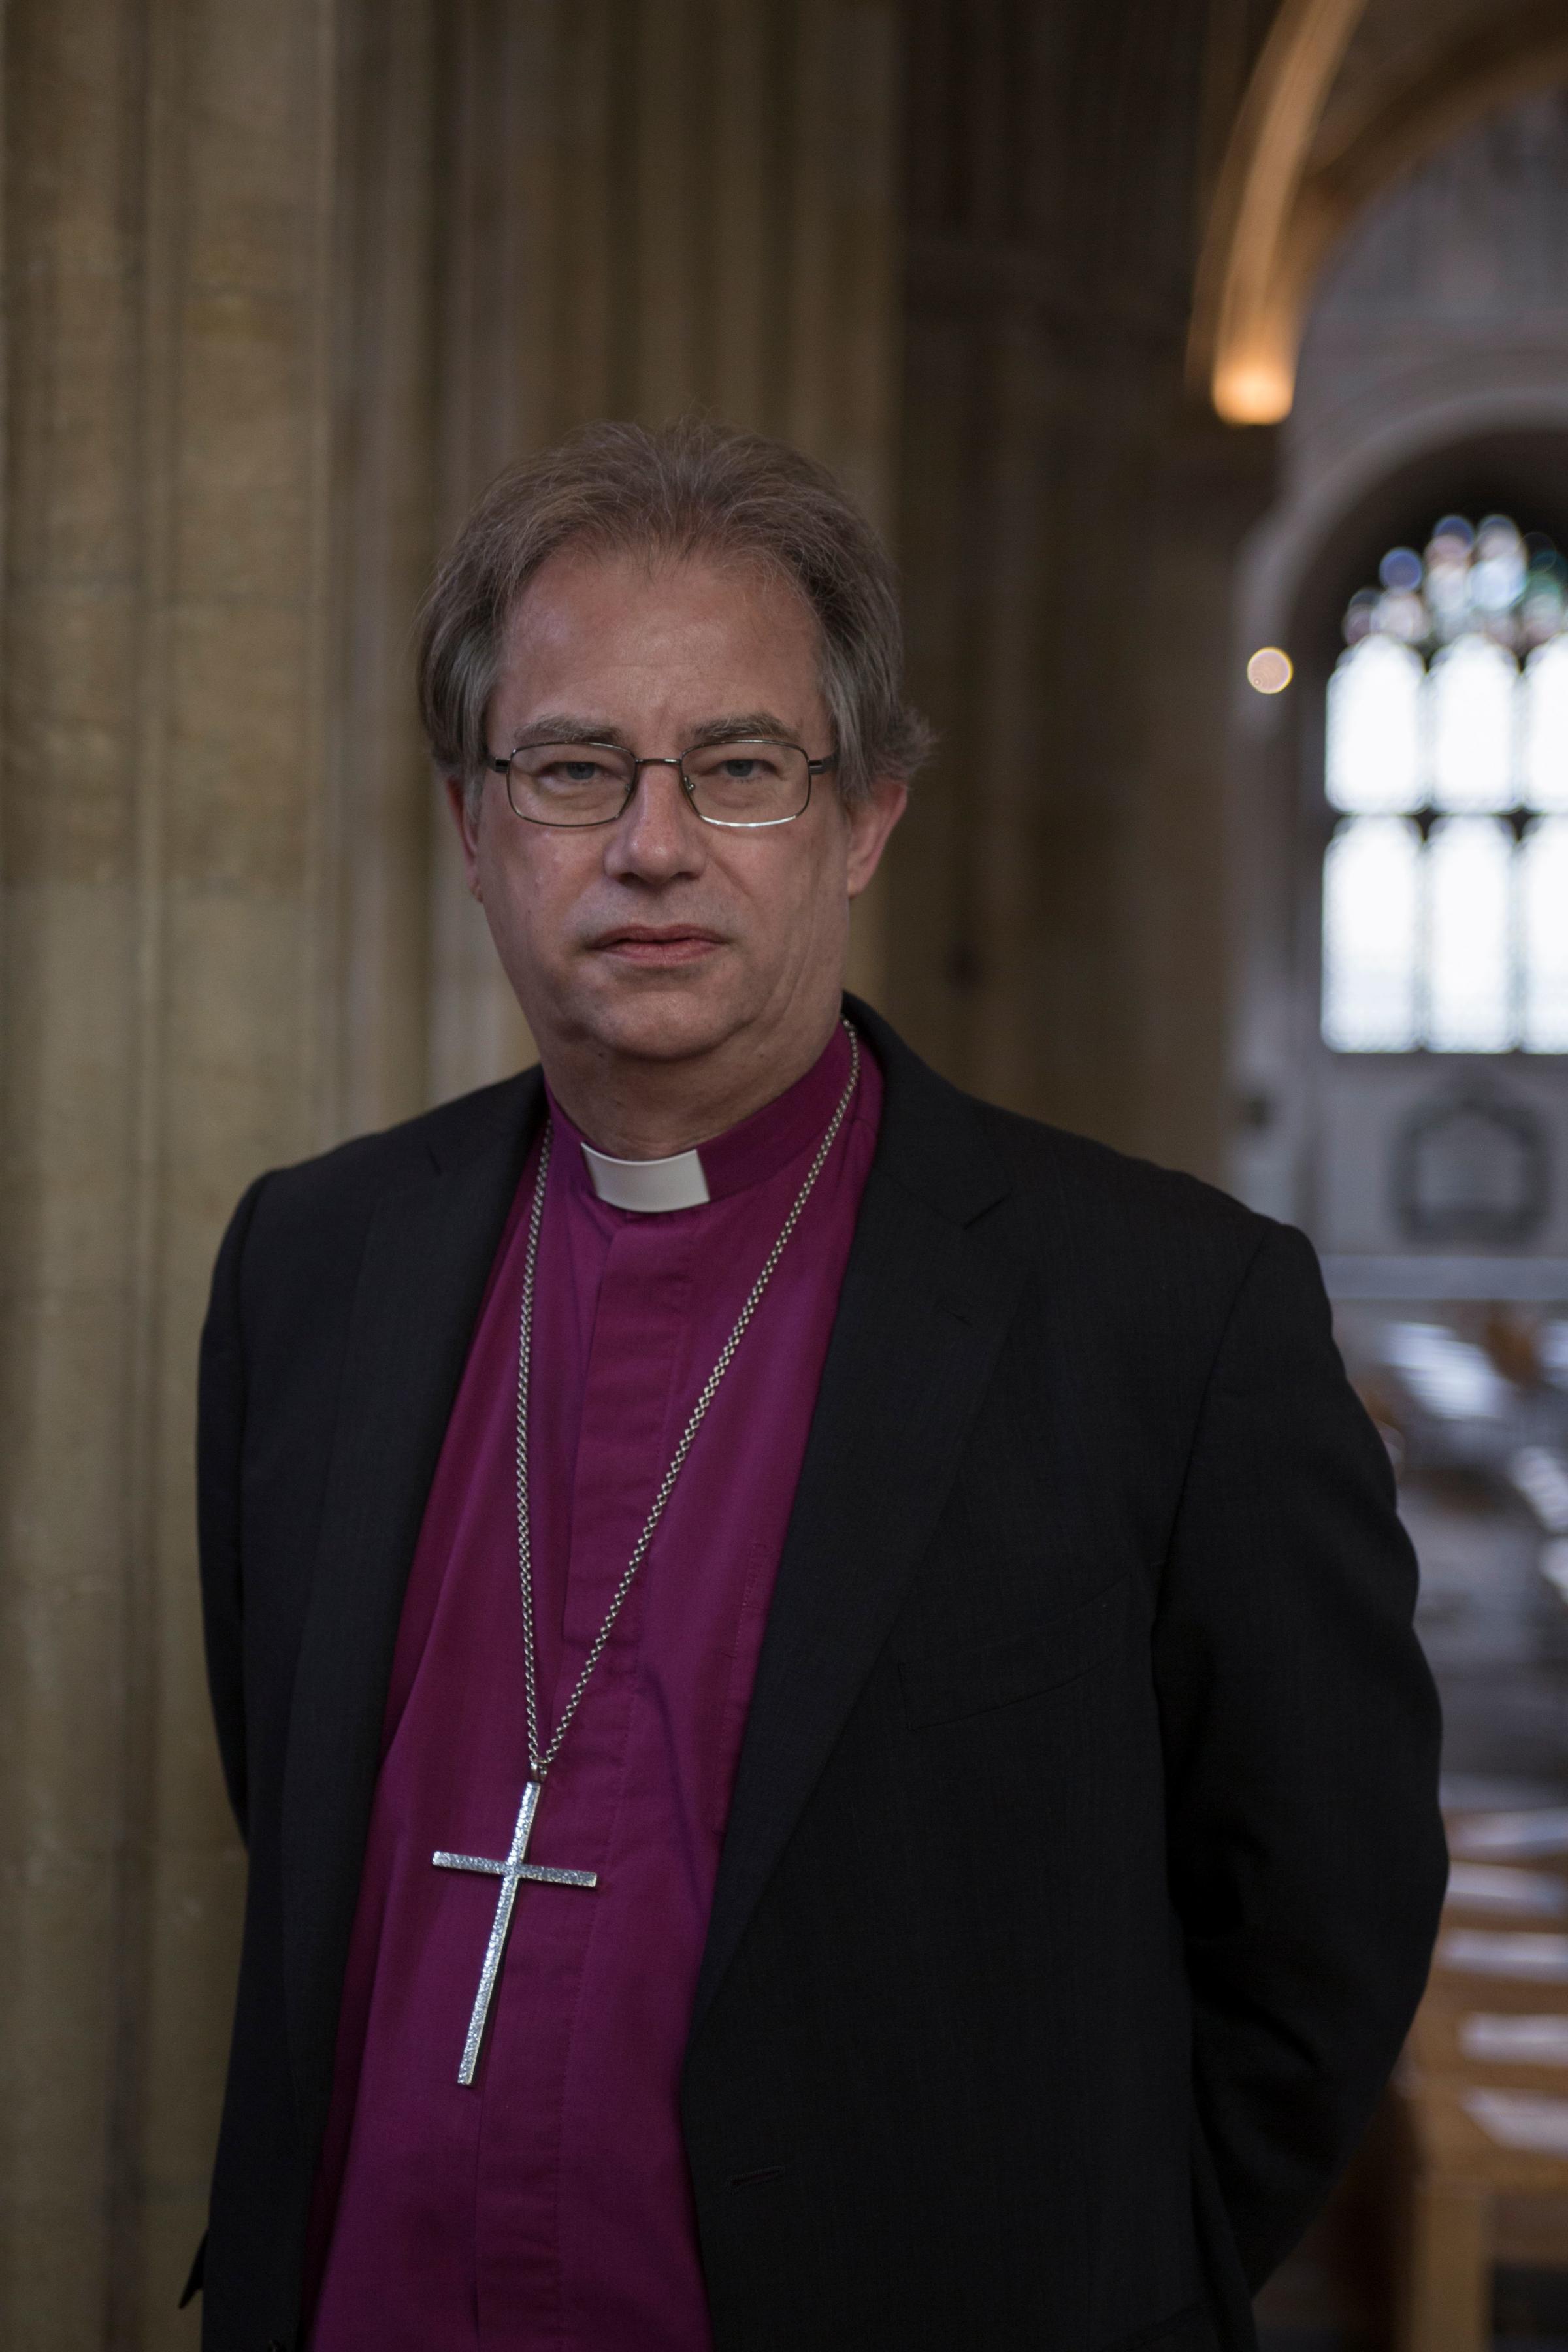 The Bishop of Oxford Rt Rev Dr Steven Croft 